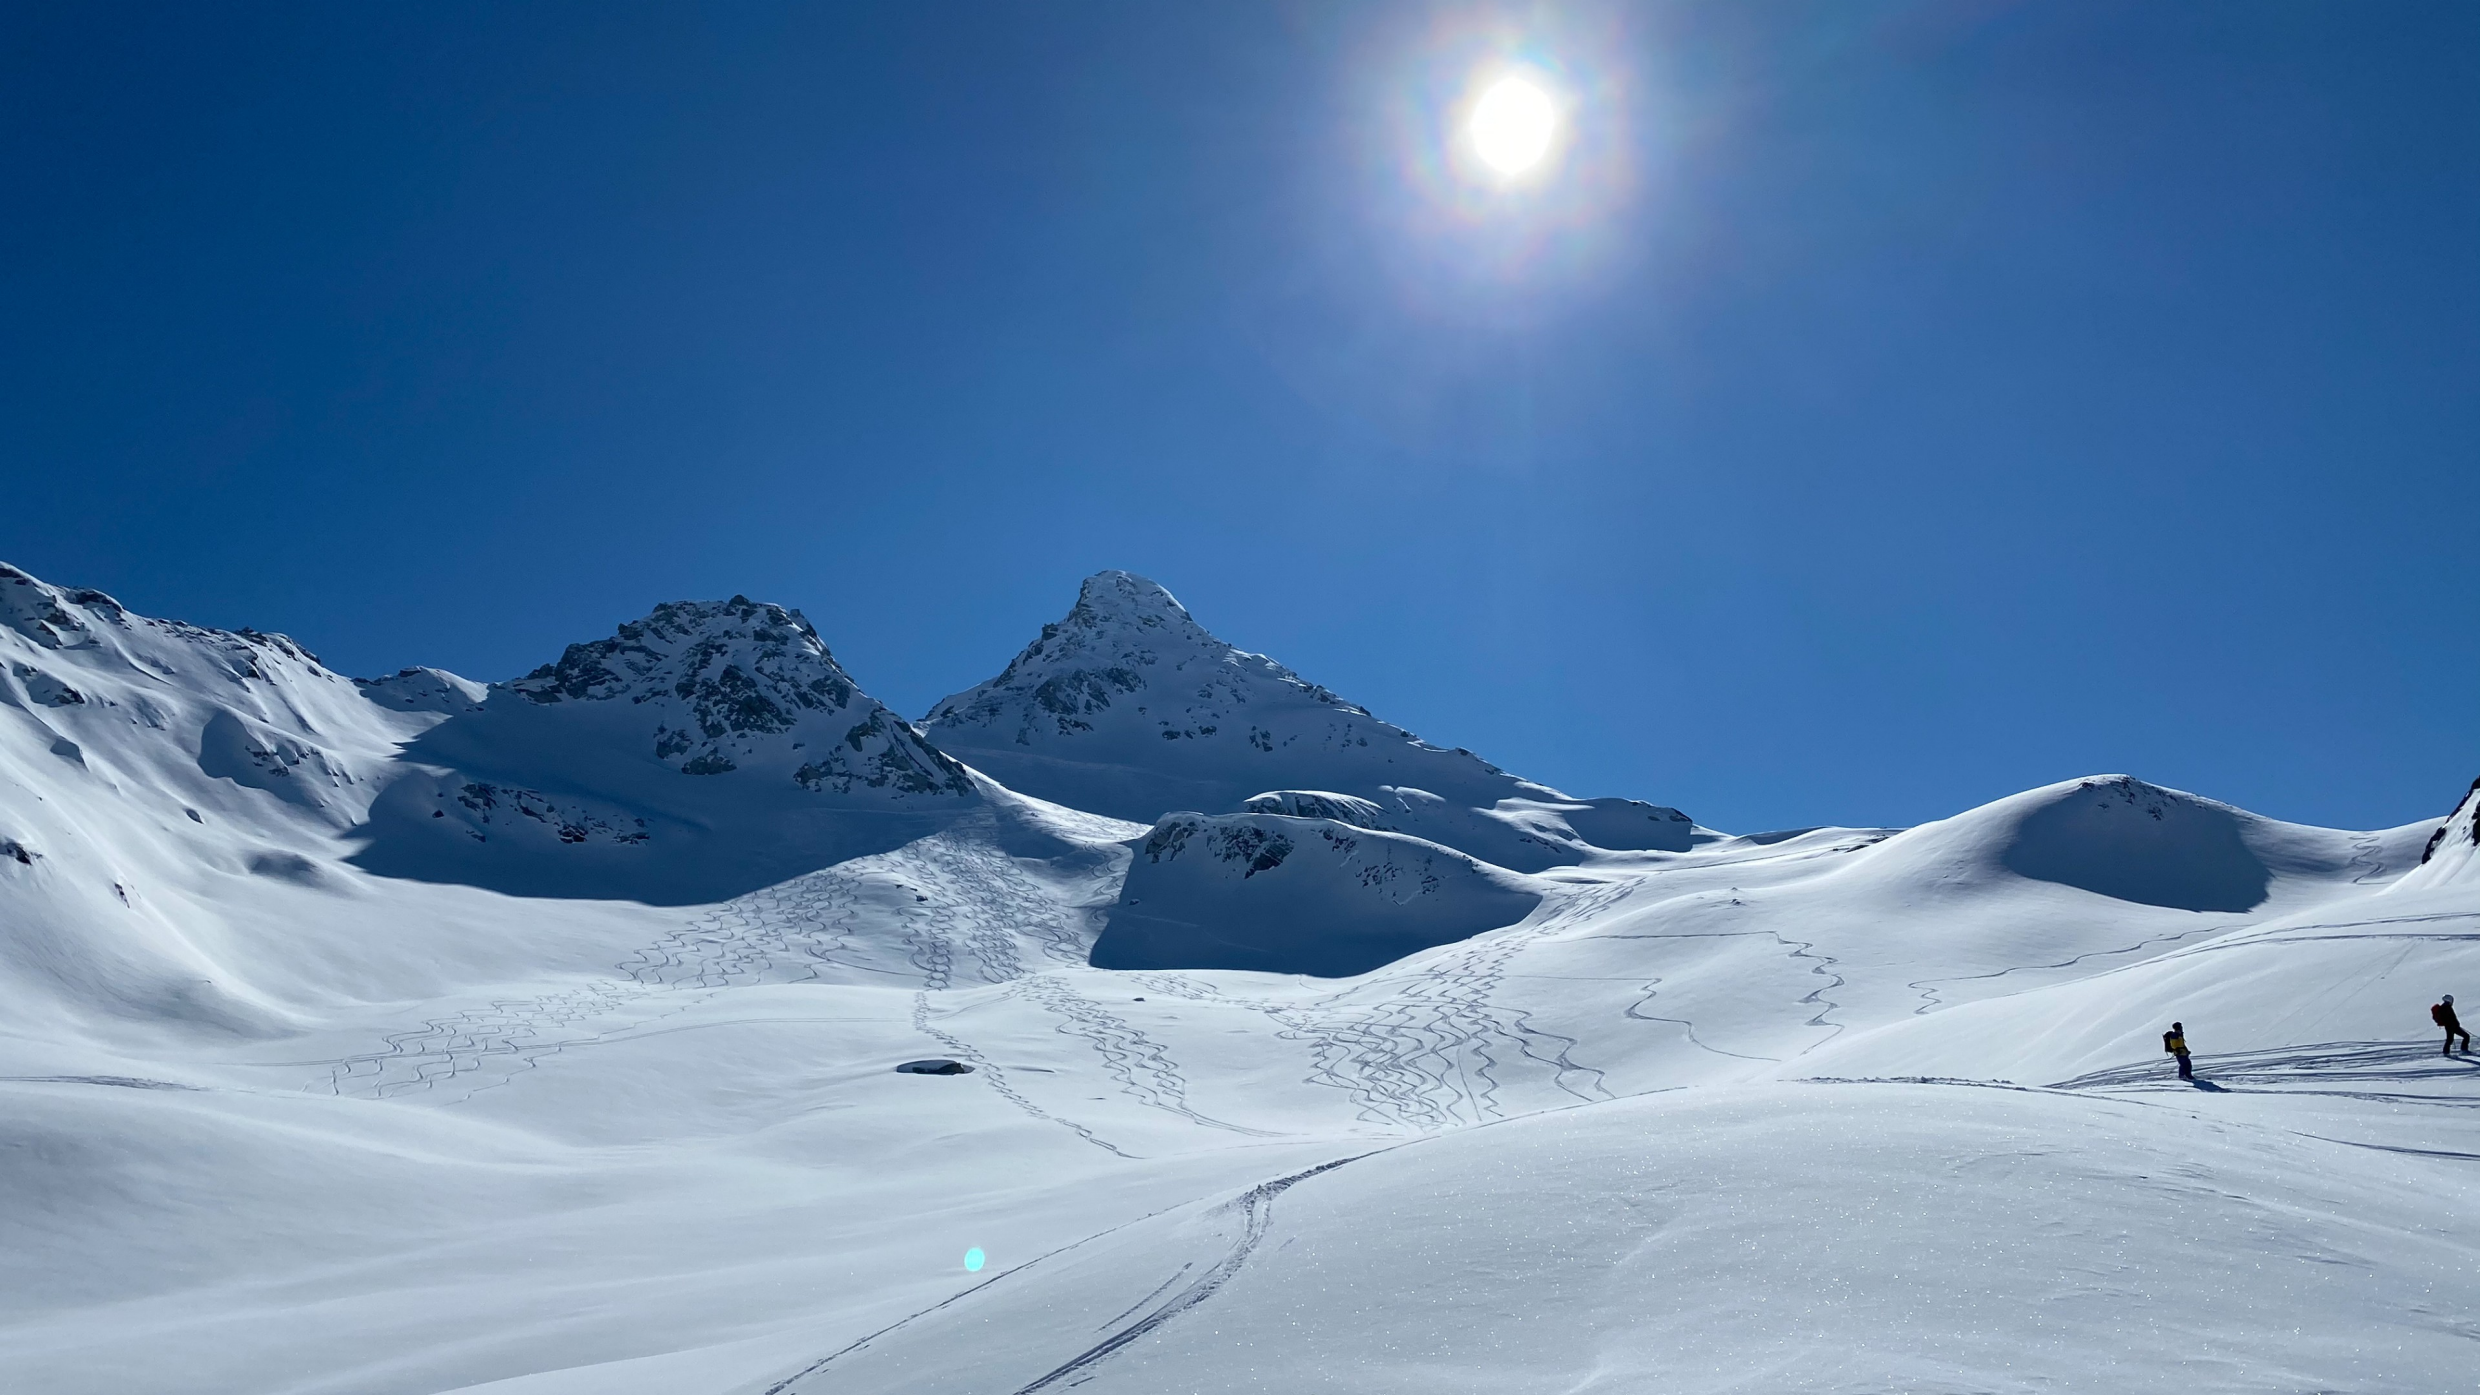 Berg+Ski: Die Belohnung nach dem anstrengenden Aufstieg - Die Abfahrt im feinsten Pulver bei besten Bedingungen!